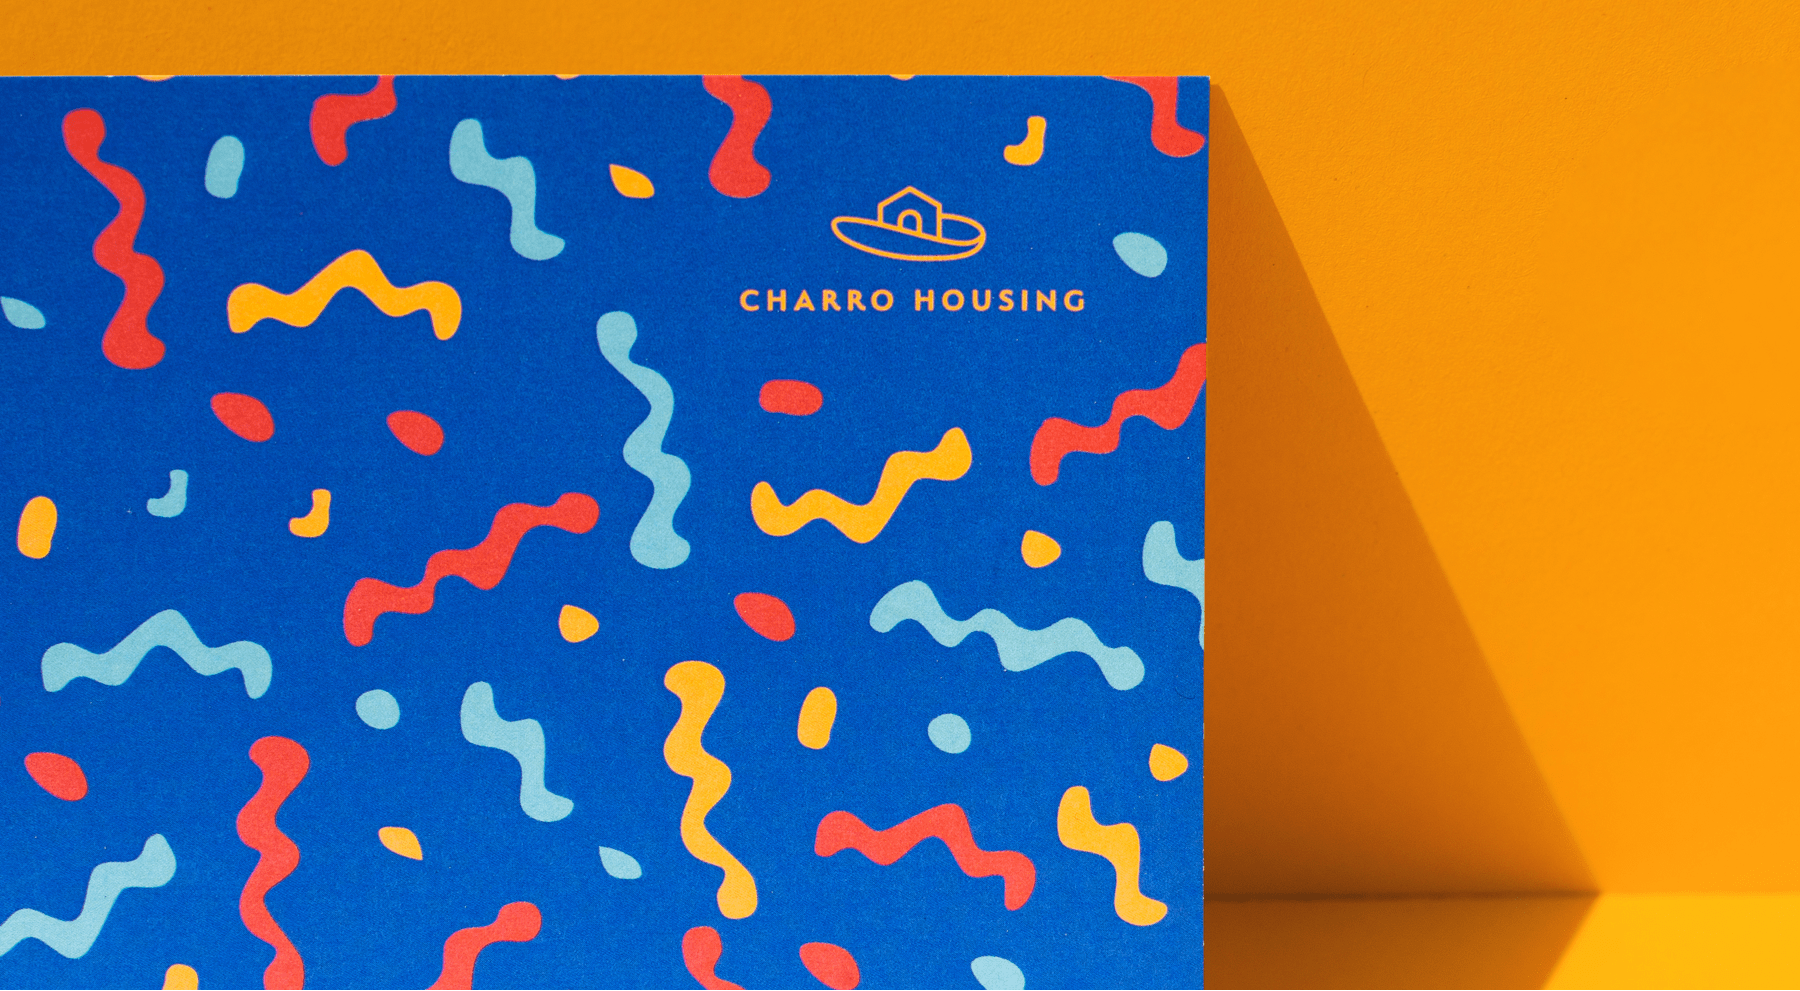 Charro Housing branding - poster detail